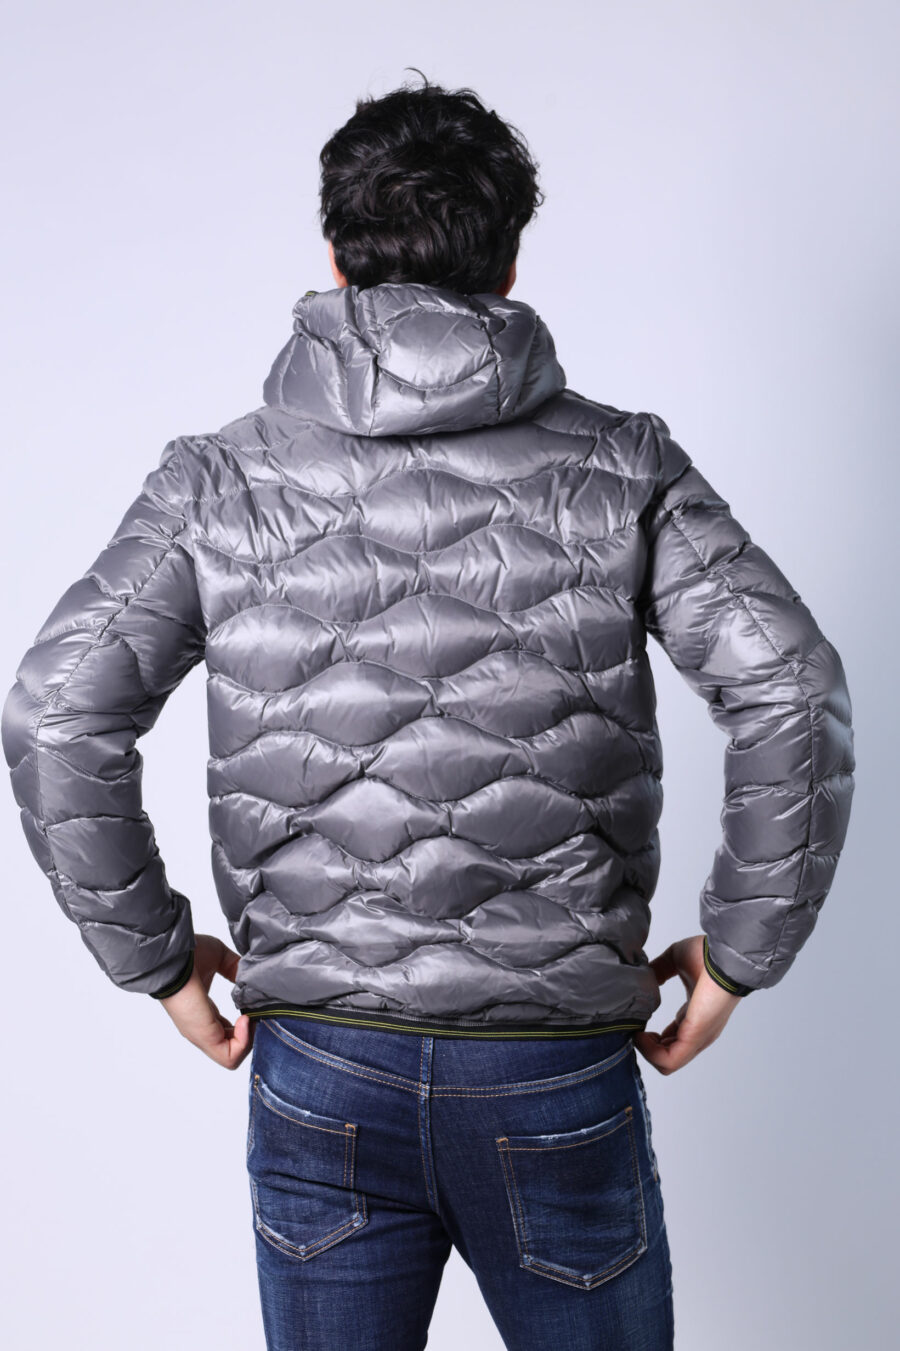 Veste à capuche grise avec lignes ondulées et patch logo - Untitled Catalog 05364